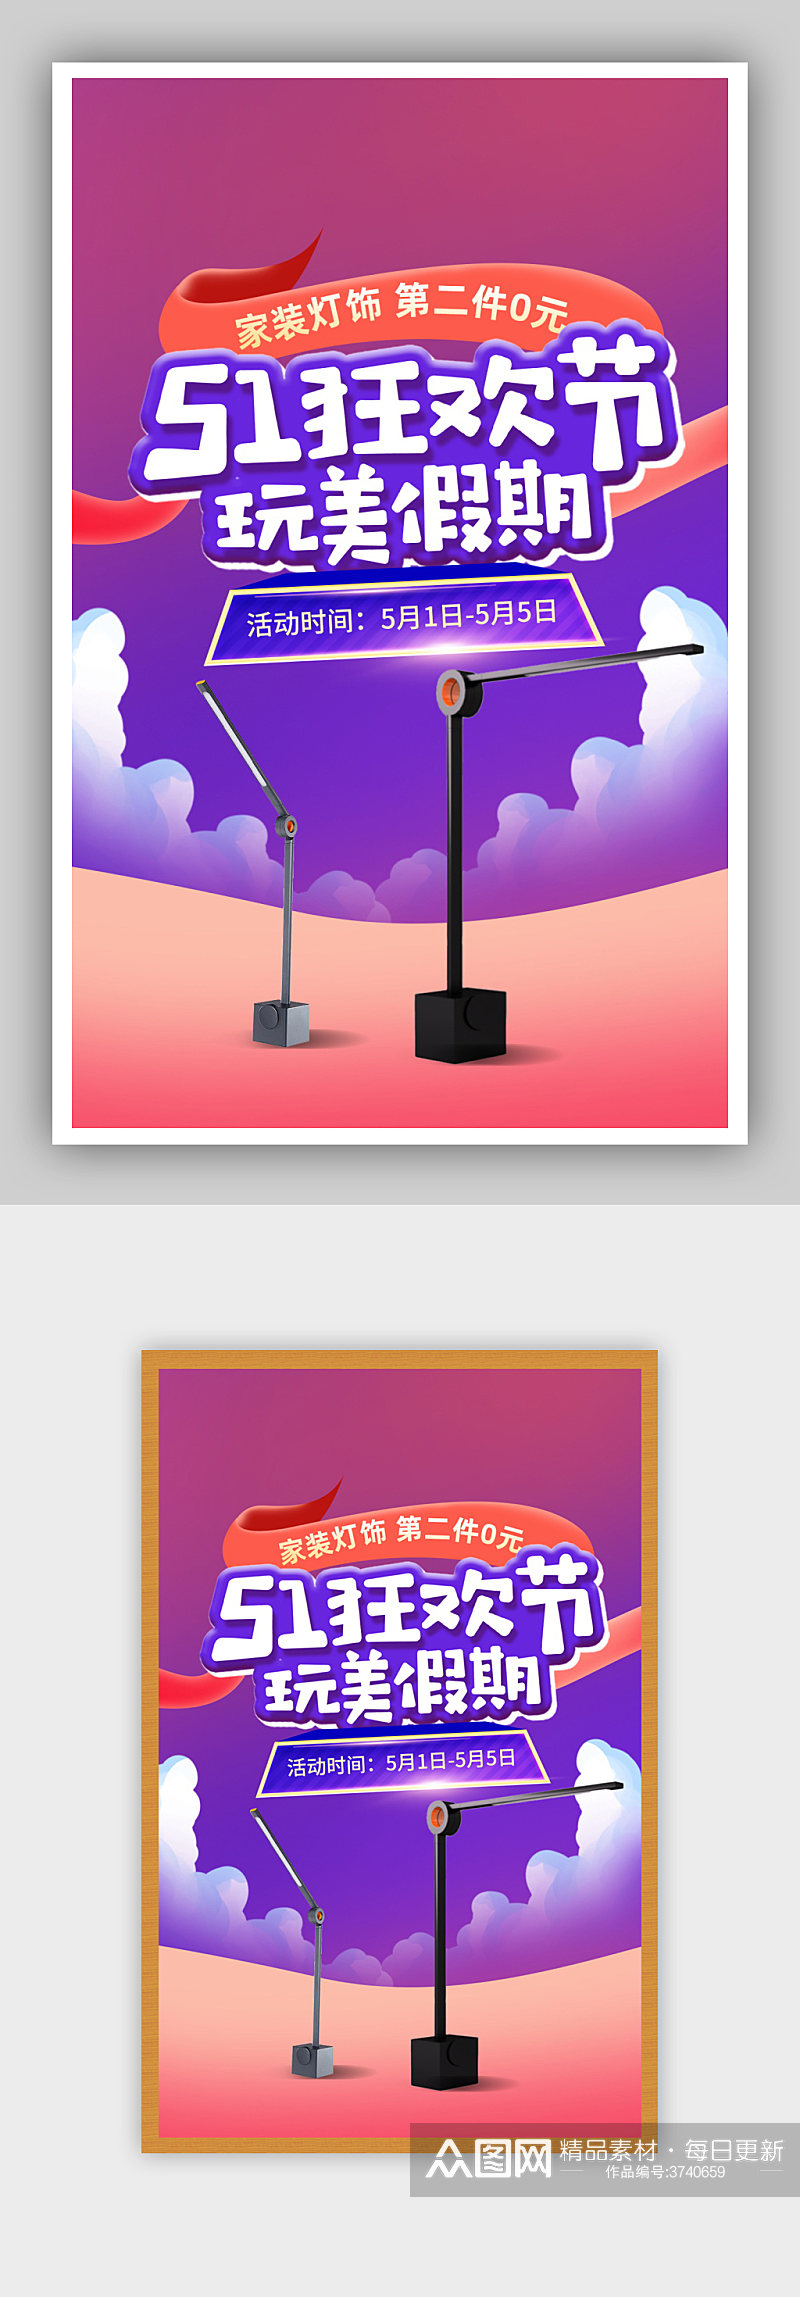 创意51狂欢节劳动节紫色灯饰海报素材